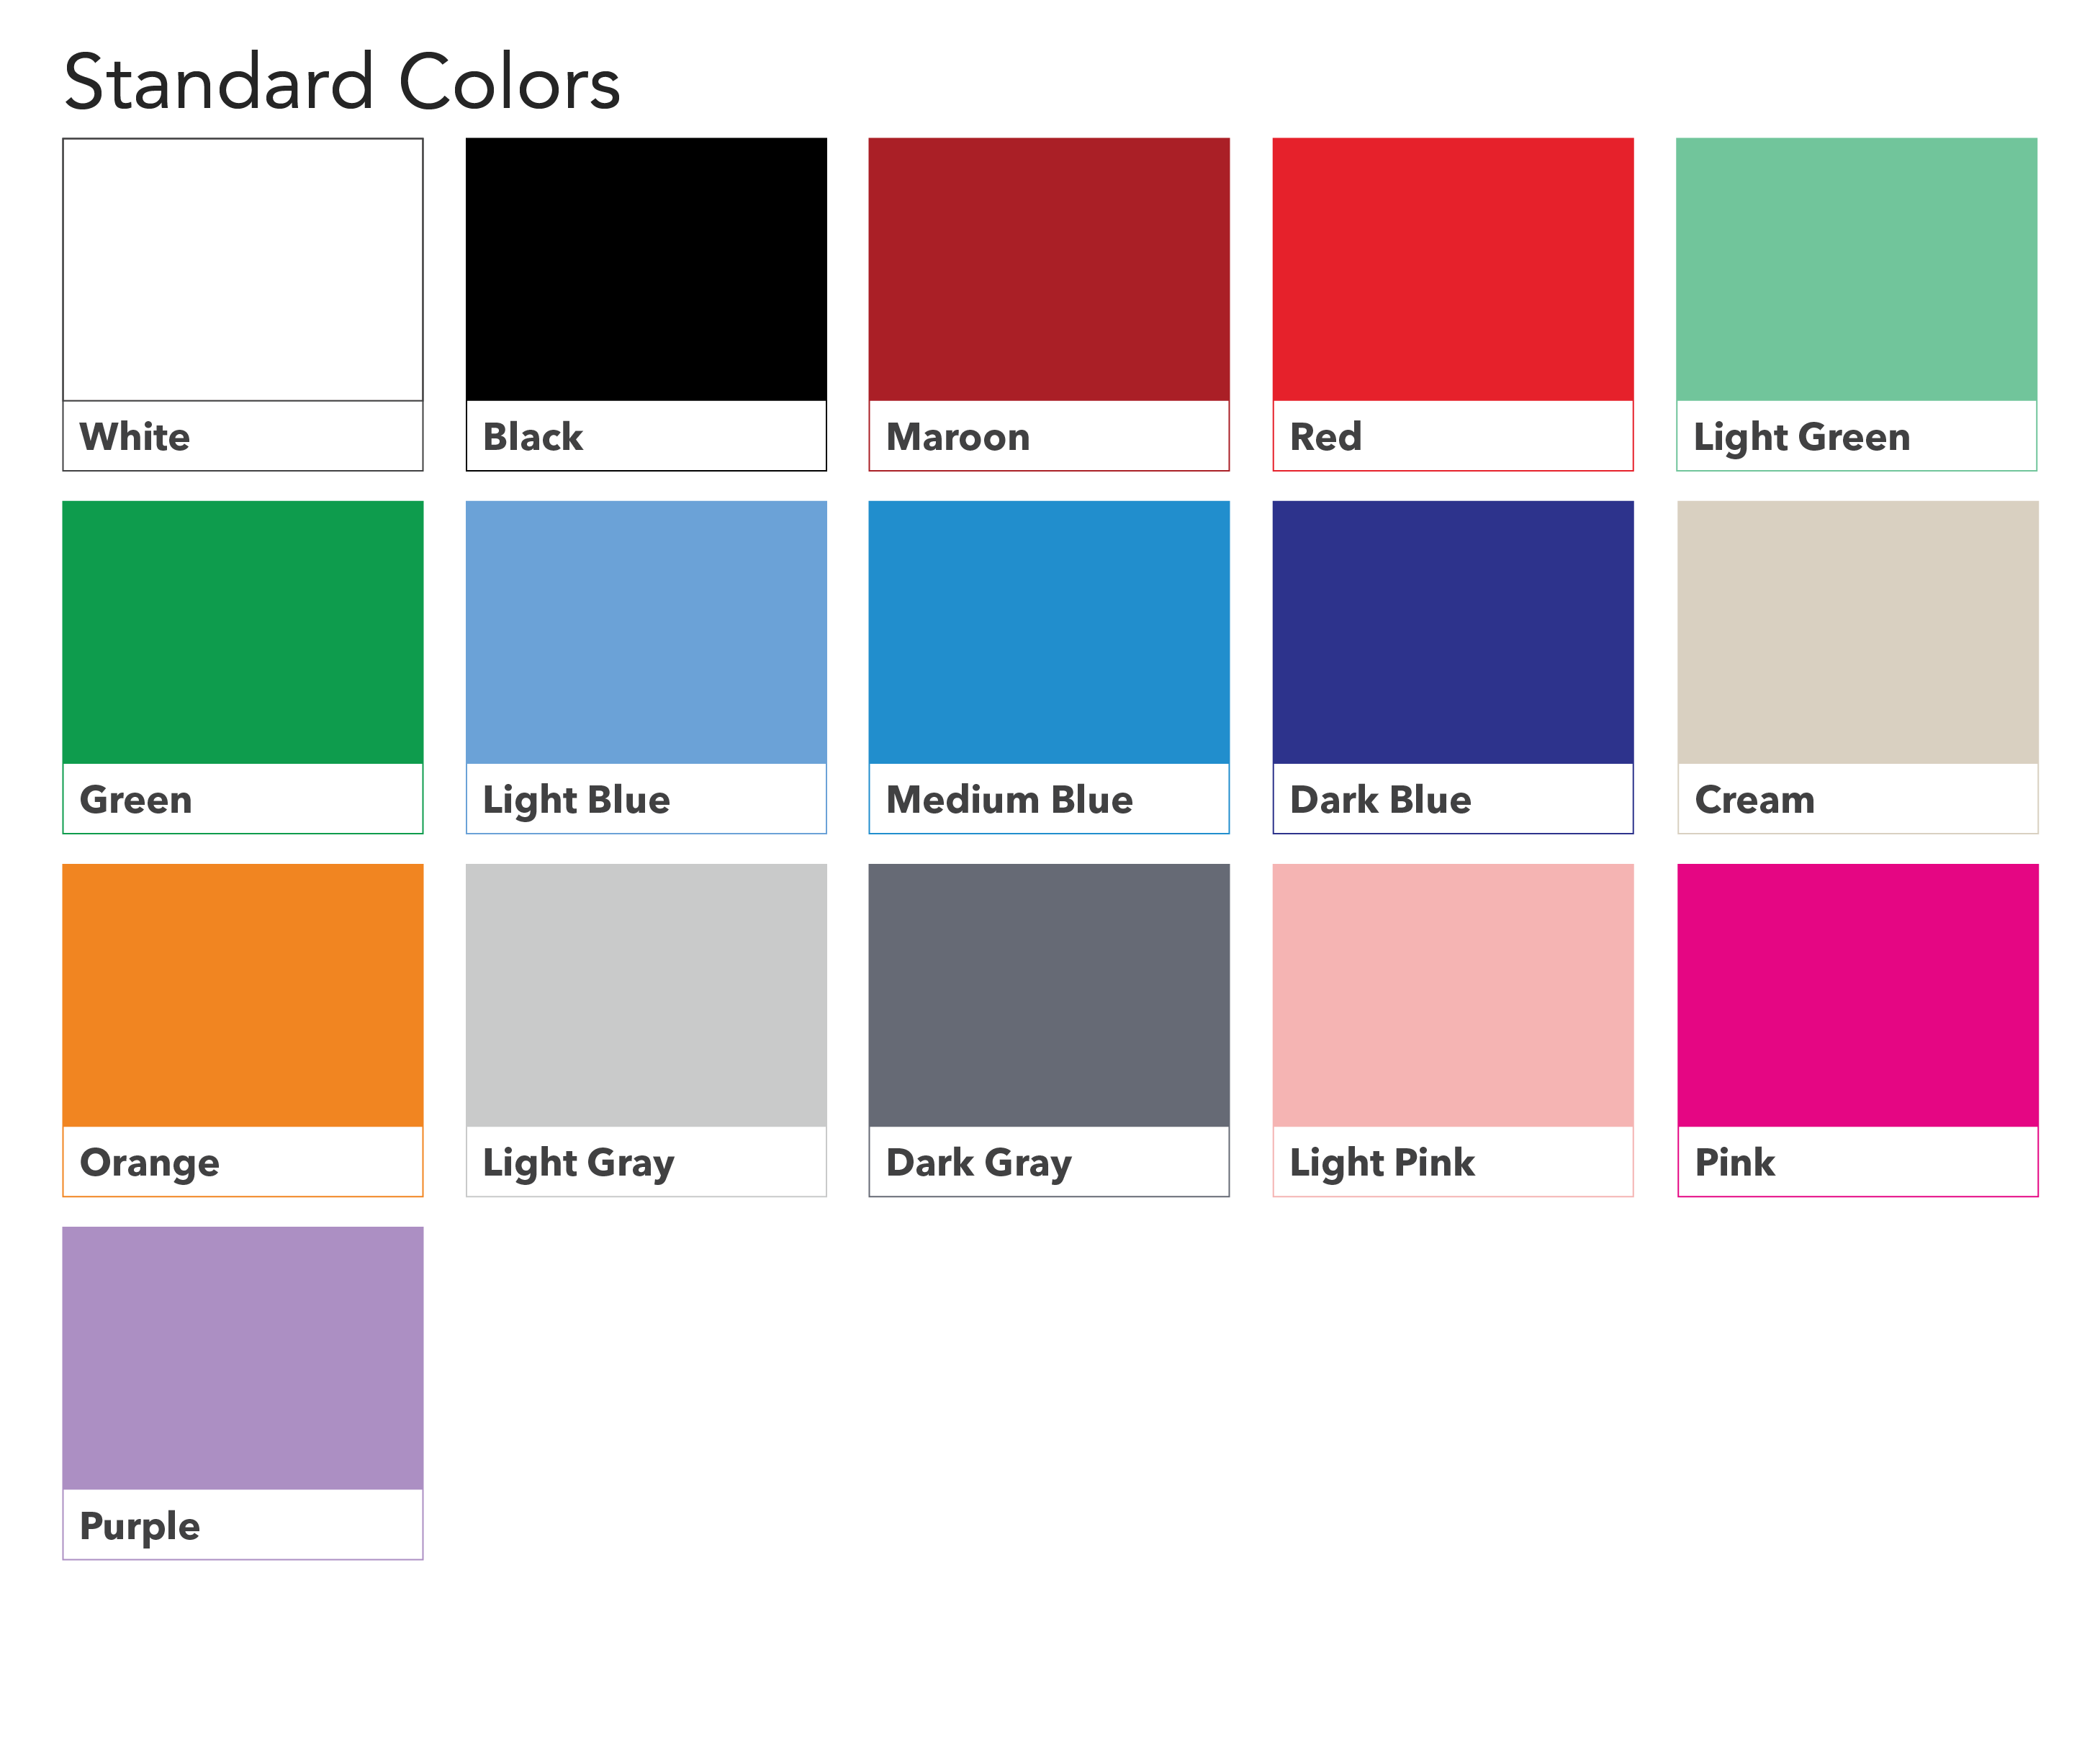 Standard Colors for Screen Print Bulk Buys